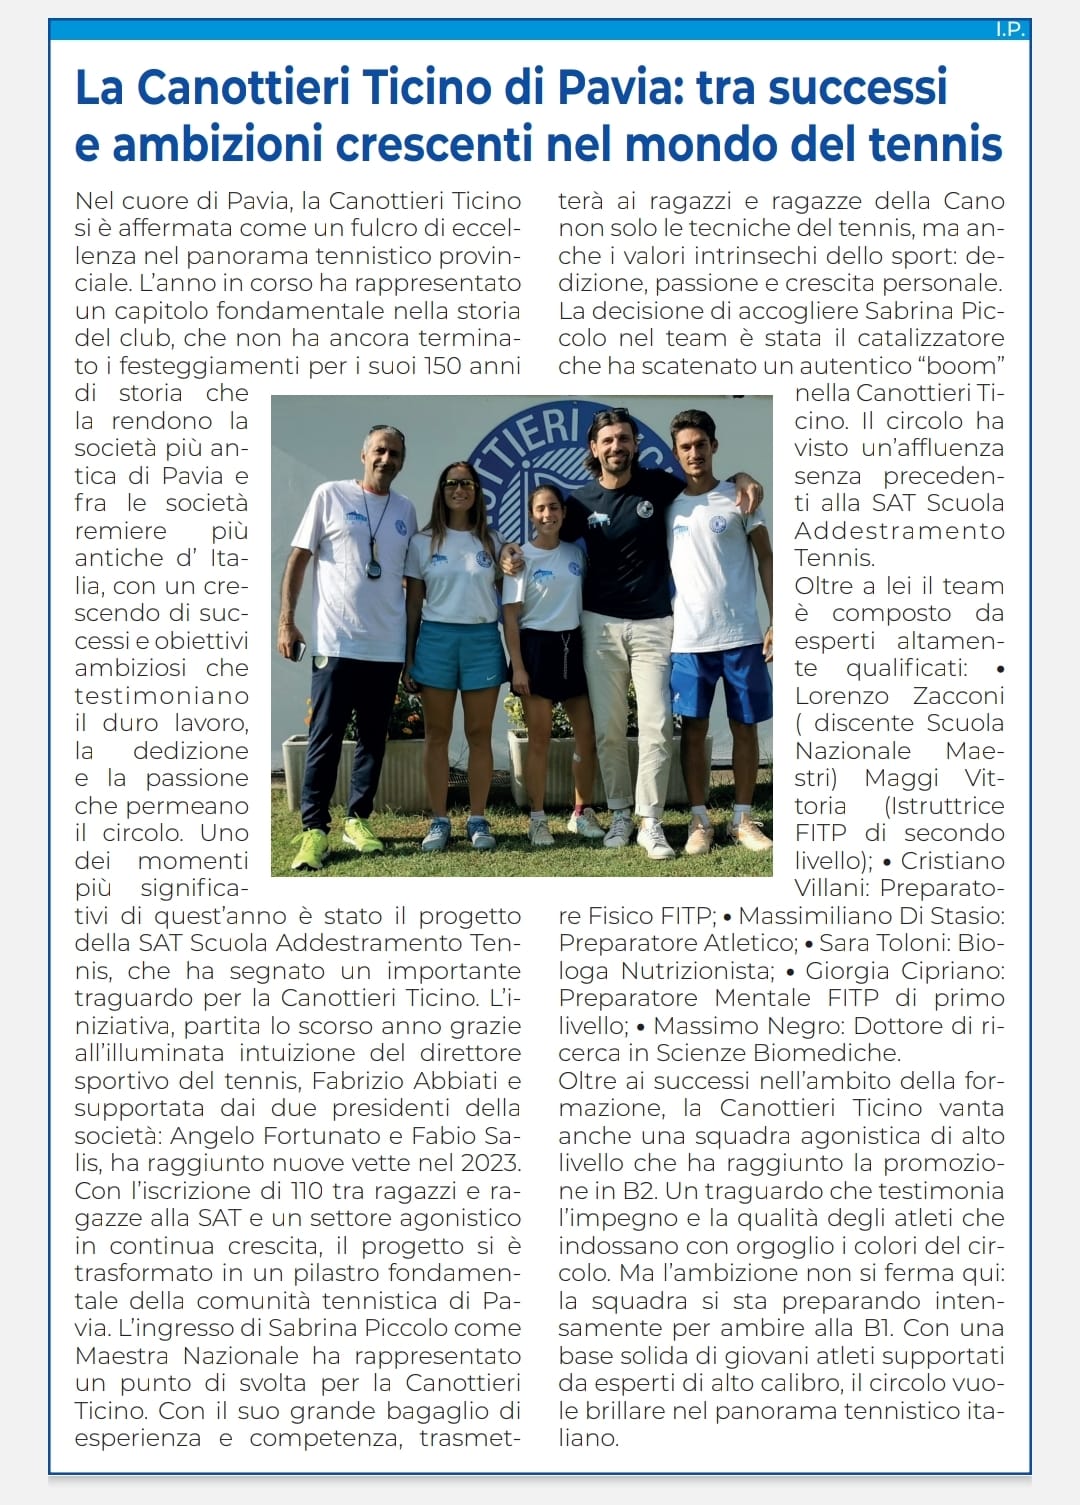 Scopri di più sull'articolo La Canottieri Ticino di Pavia: Un Eccellente Capitolo nel Mondo del Tennis